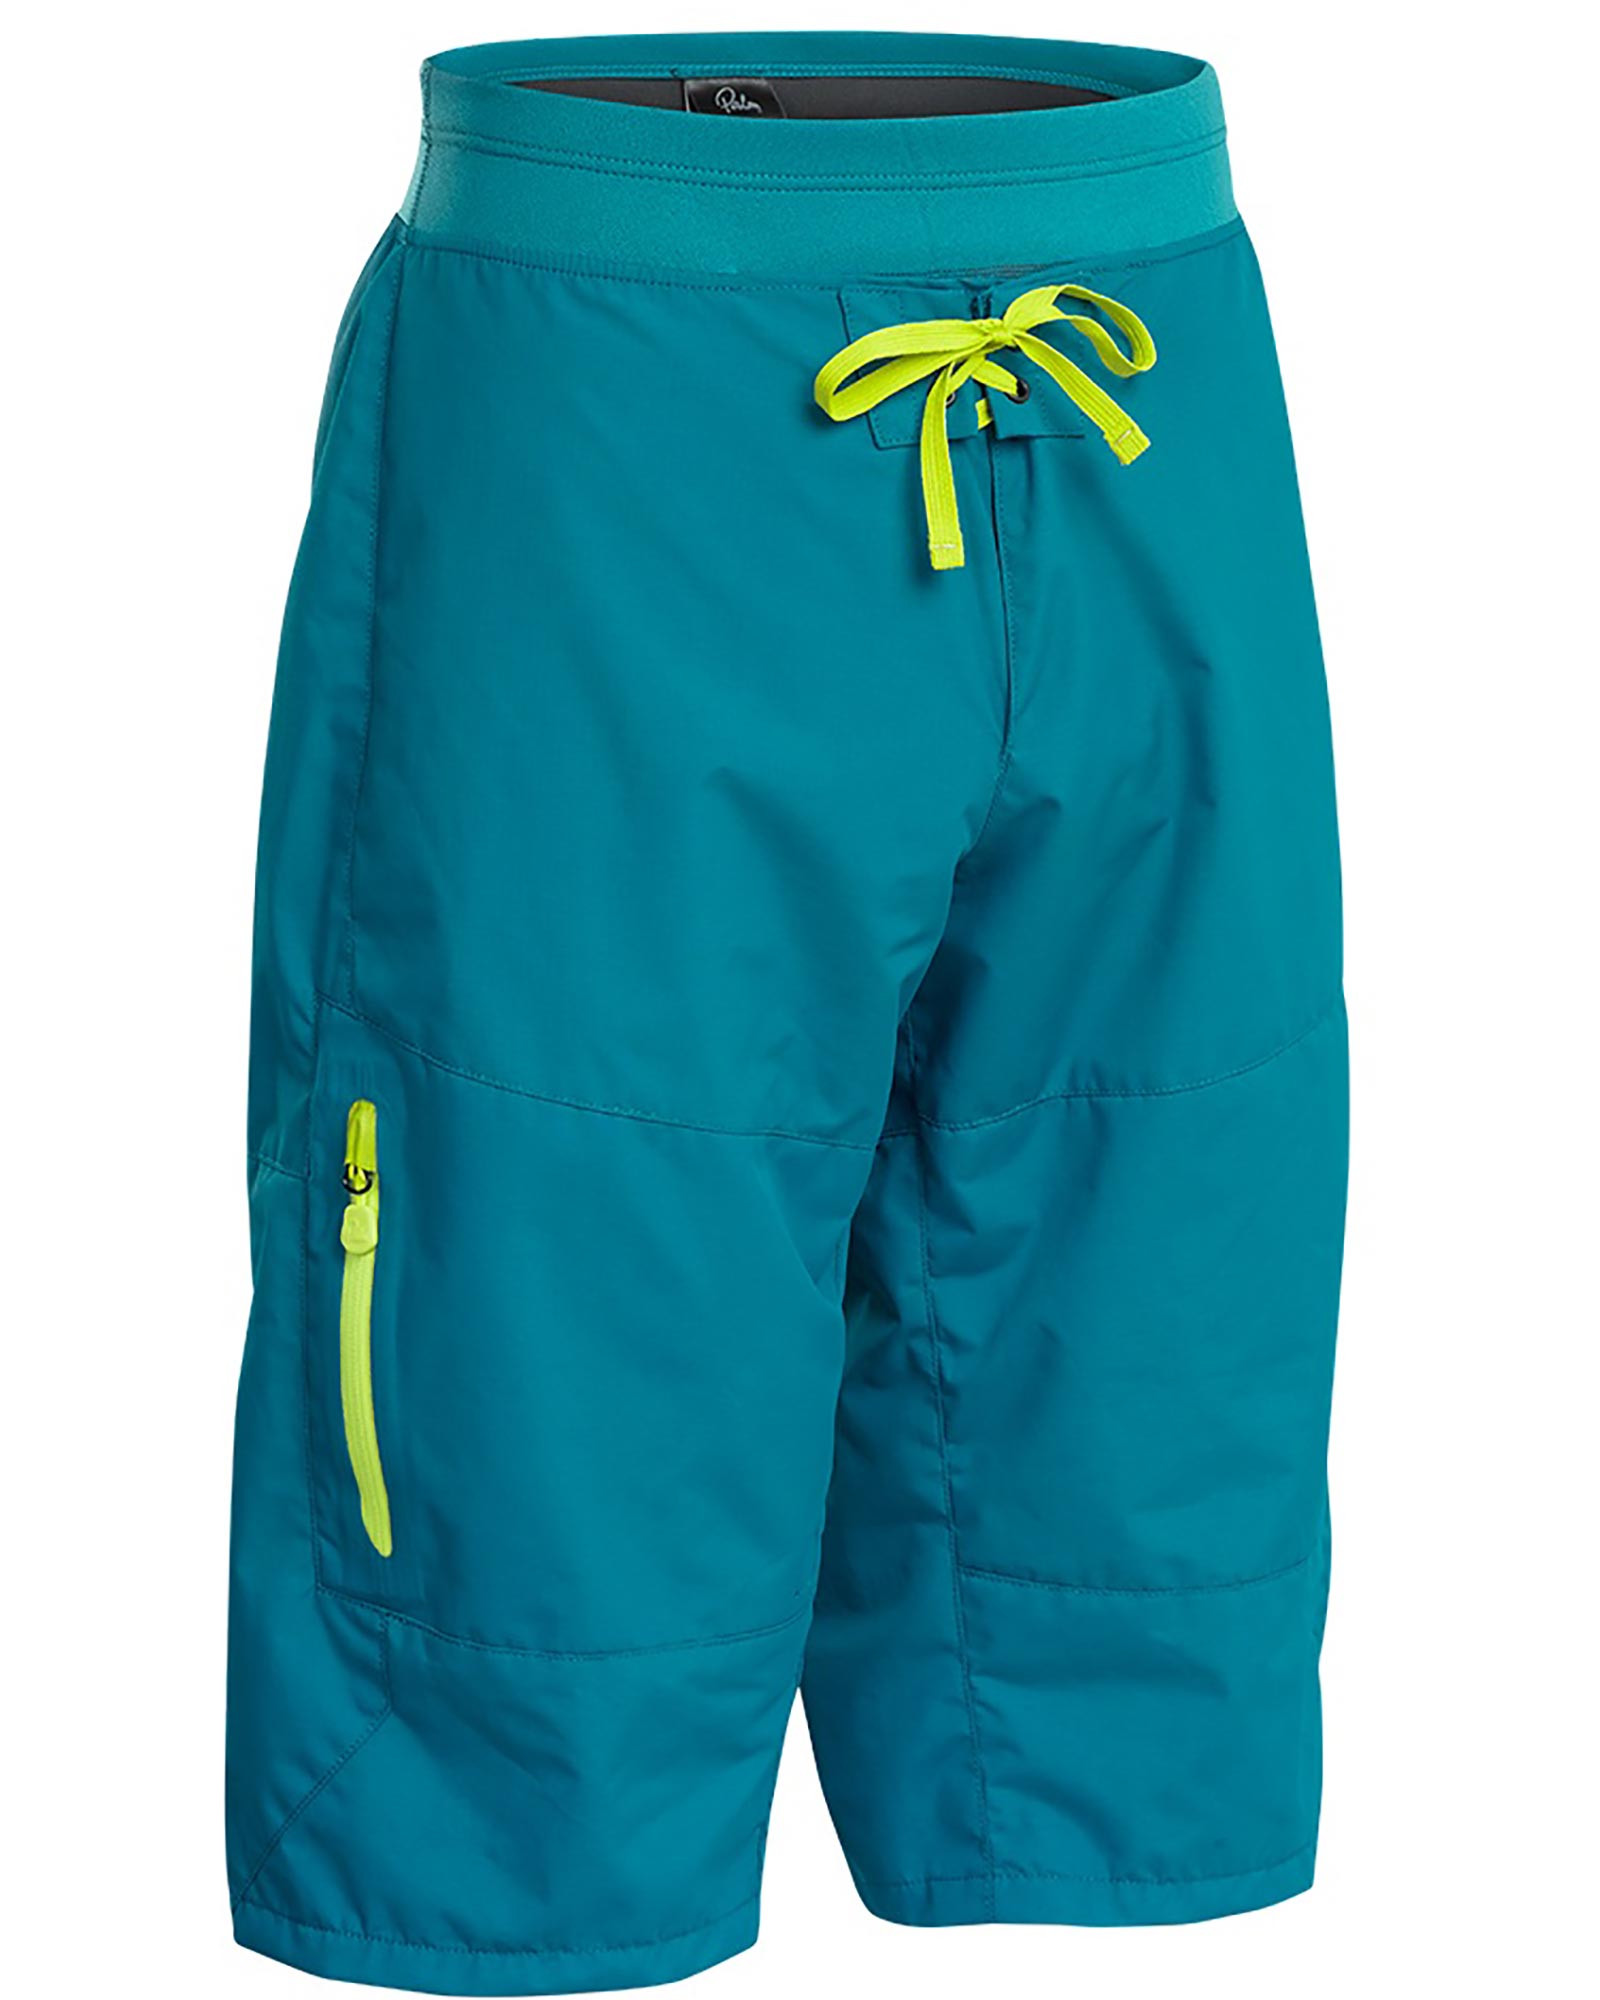 Product image of Palm Horizon Men's Shorts